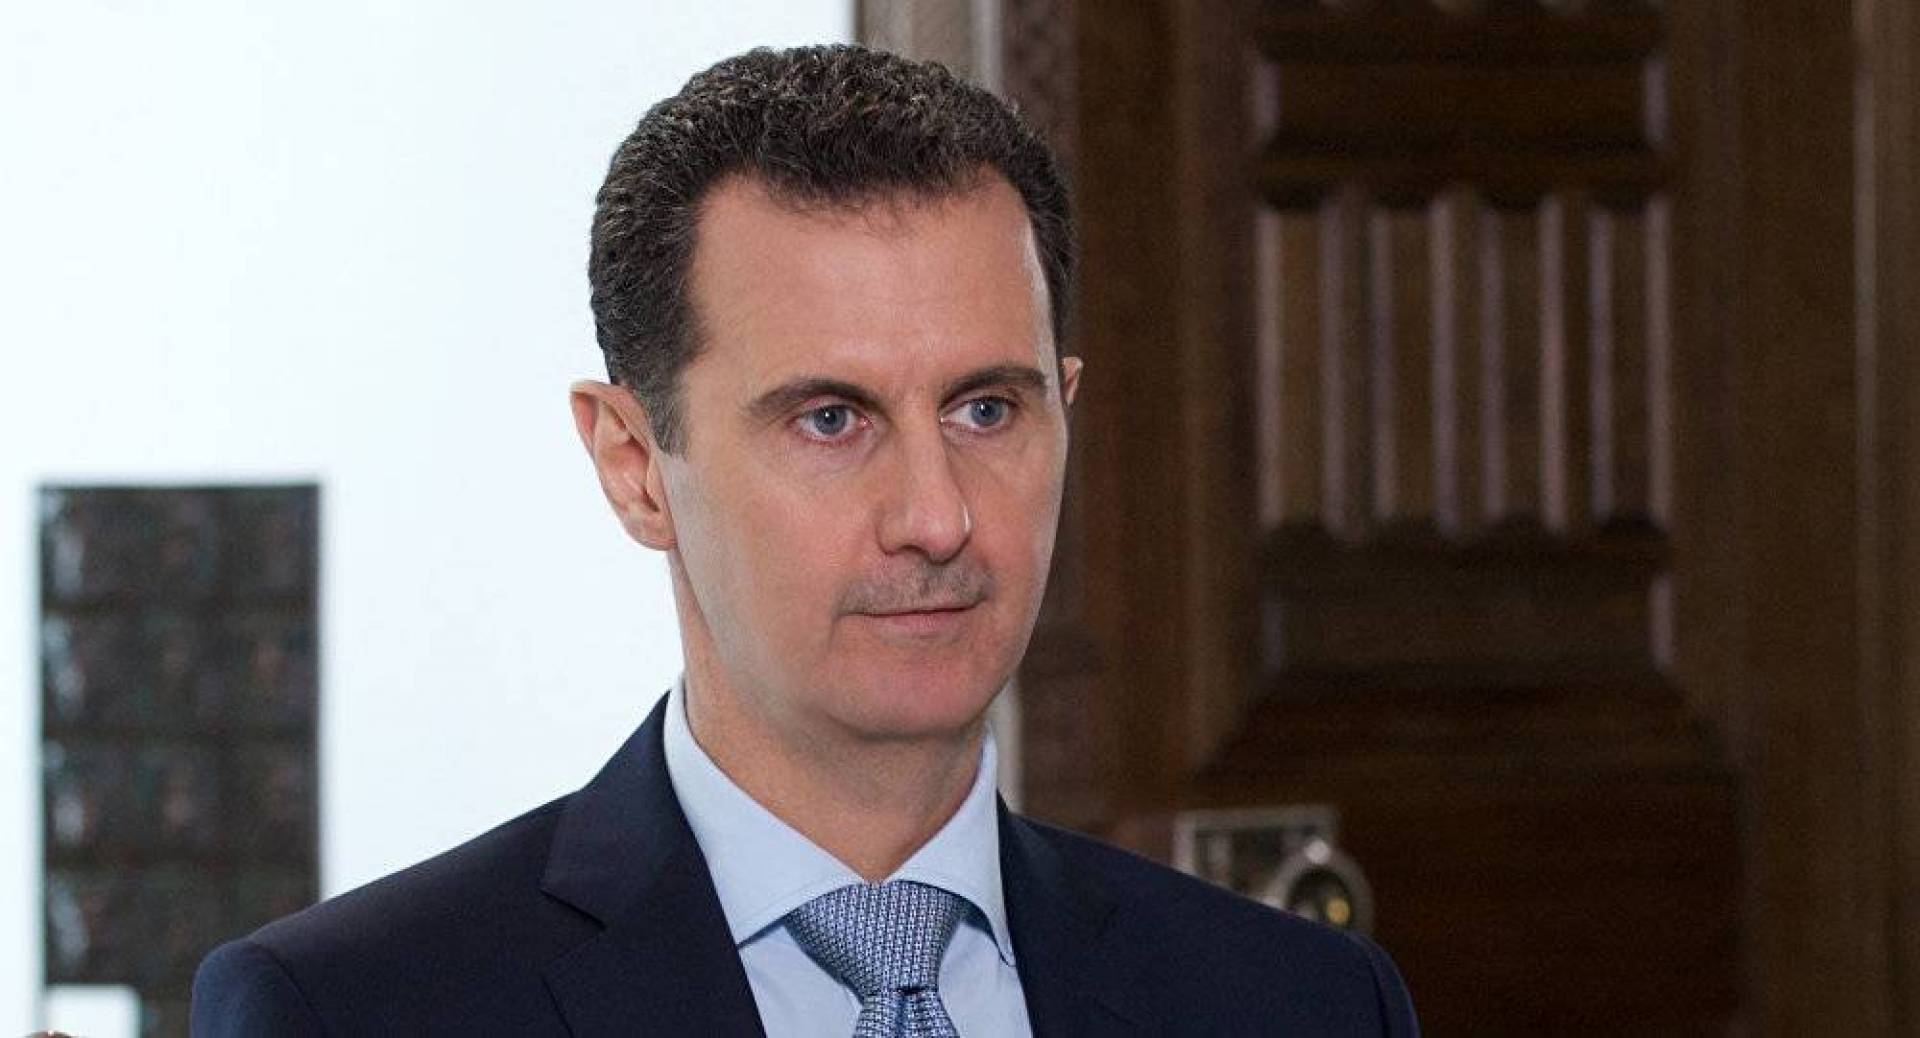 الرئيس السوري يتحدث عن حلول لإنهاء الحرب على بلاده خلال اشهر